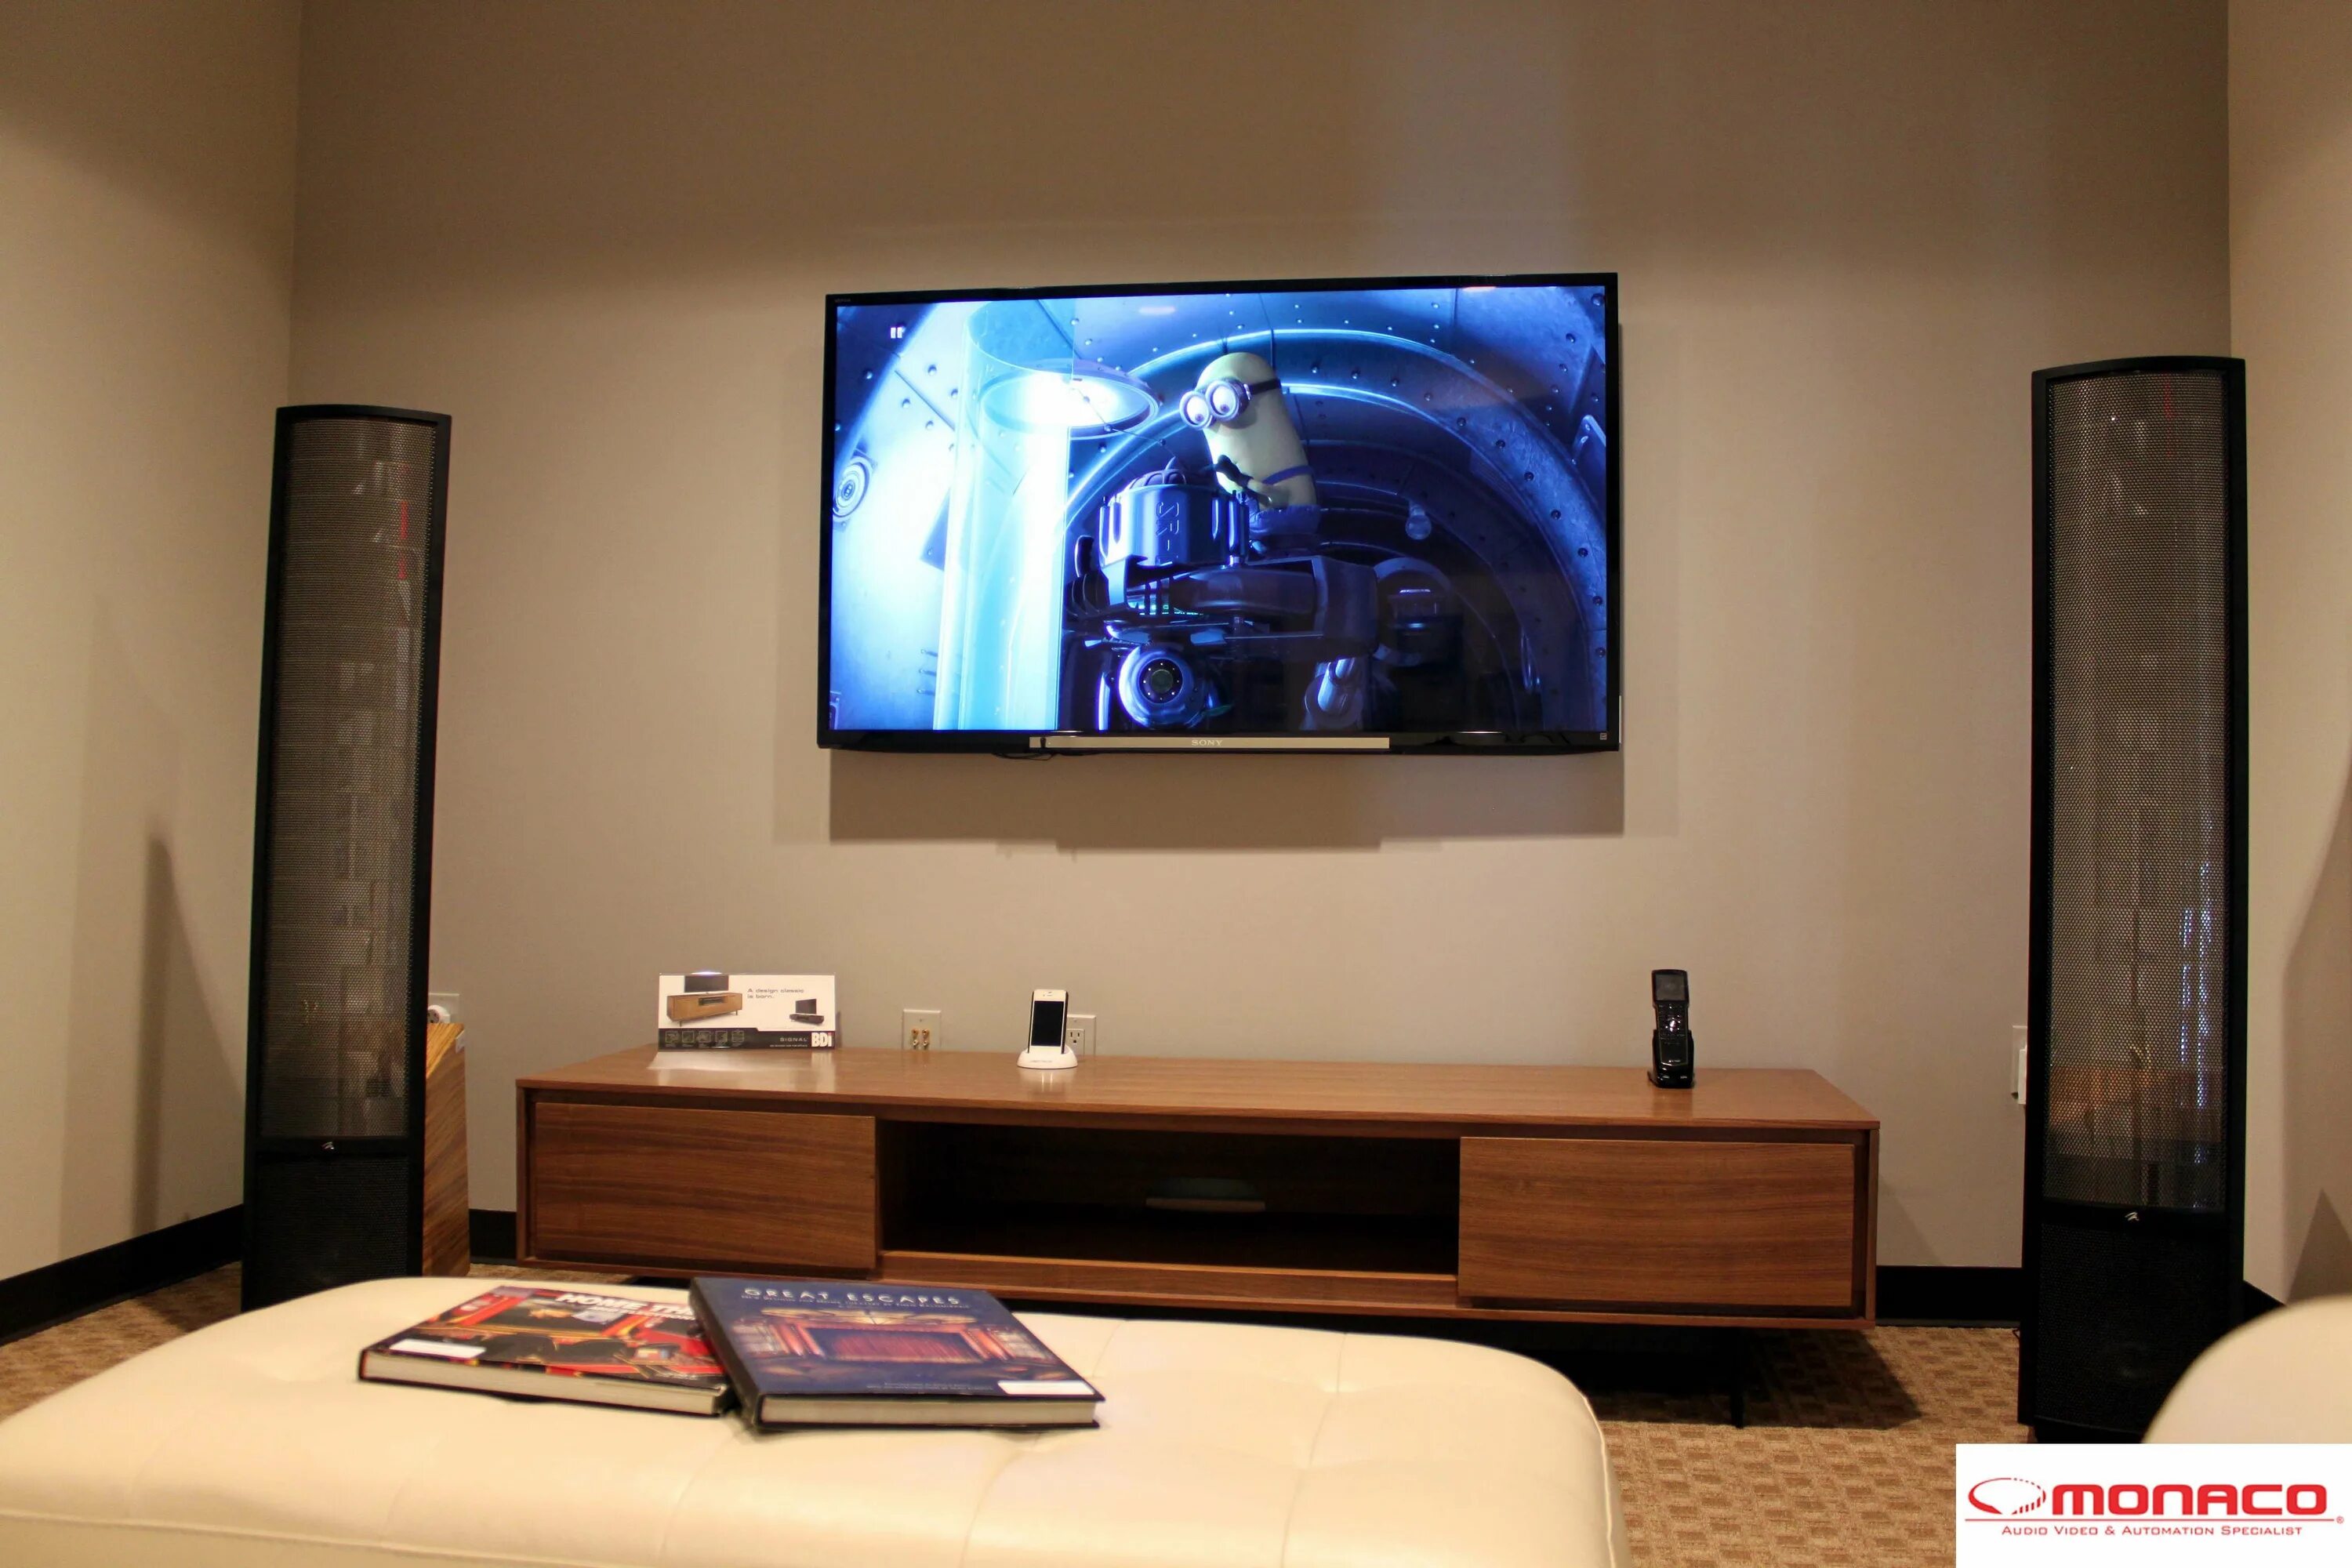 Комната с телевизором. Комната с большим телевизором. Телевизор в квартире. Большой телевизор на стене.